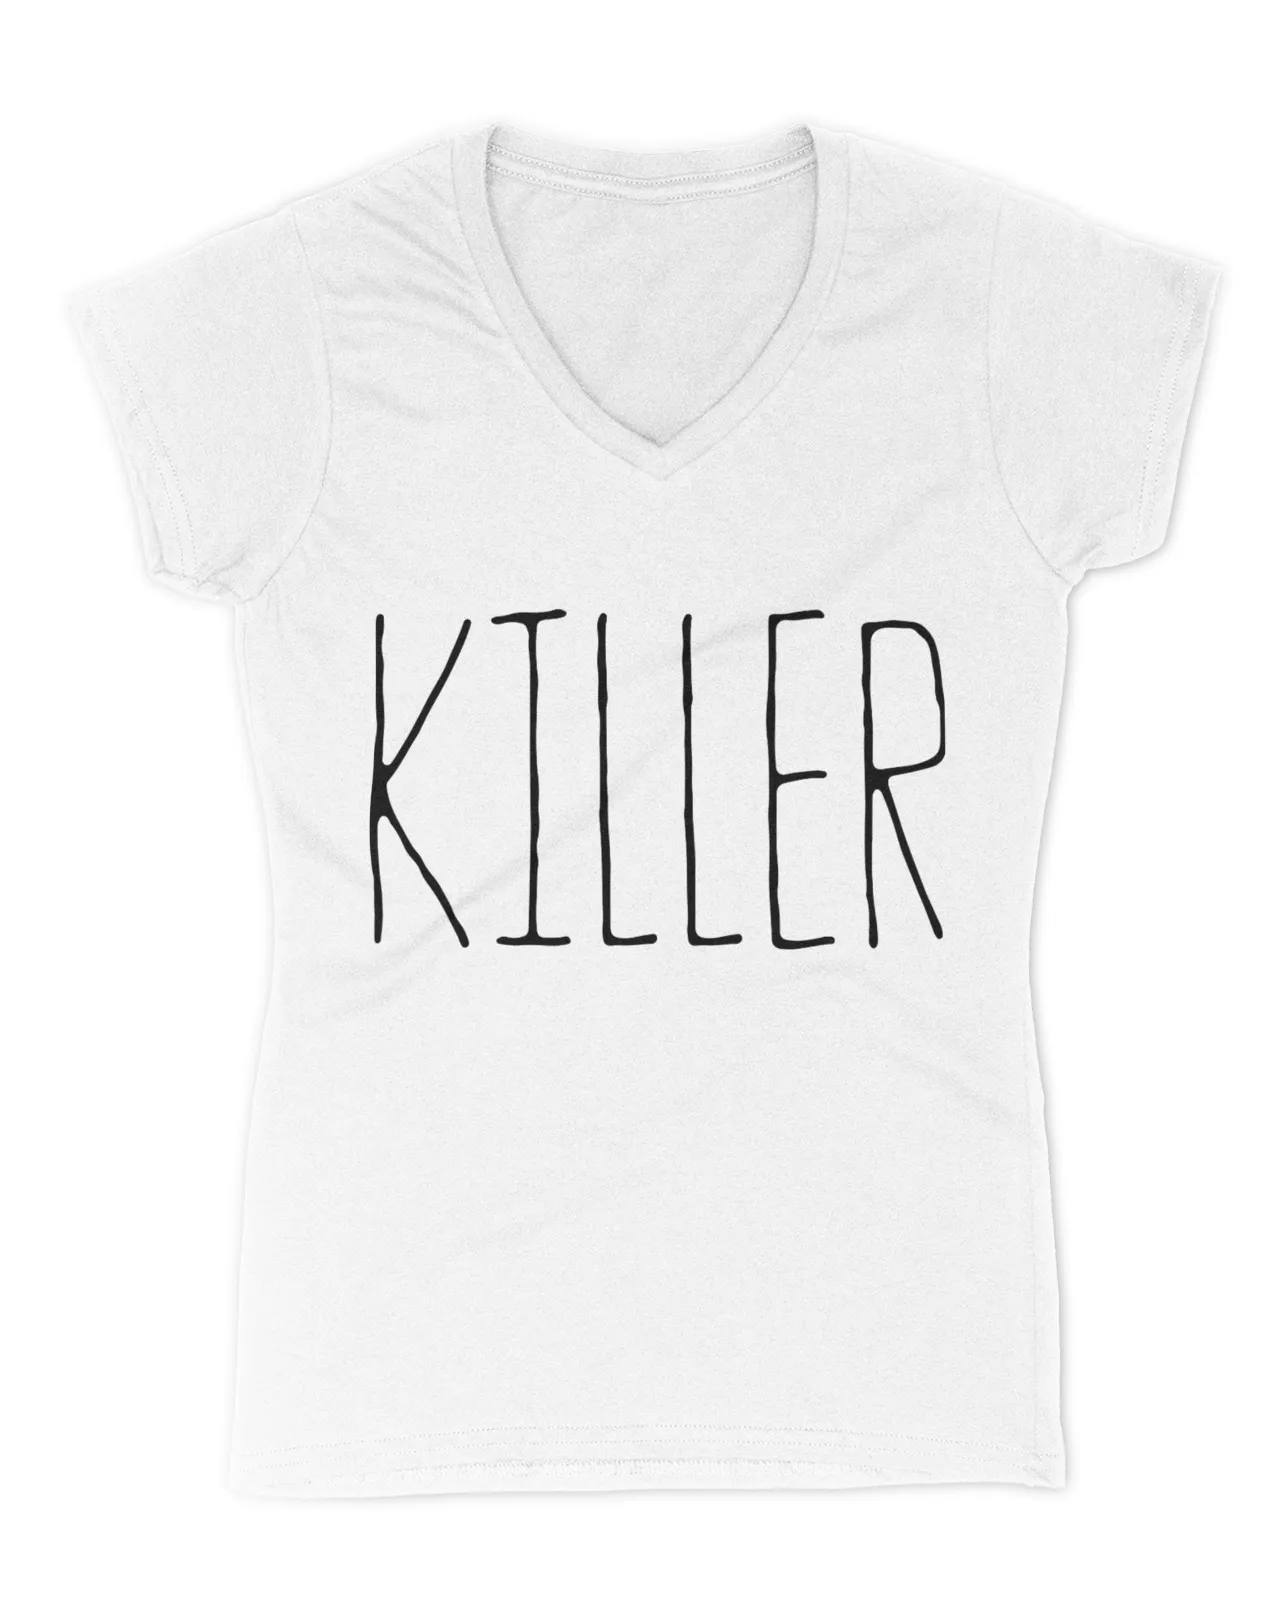 killer-shirt-in-court-thomas-lane-iii